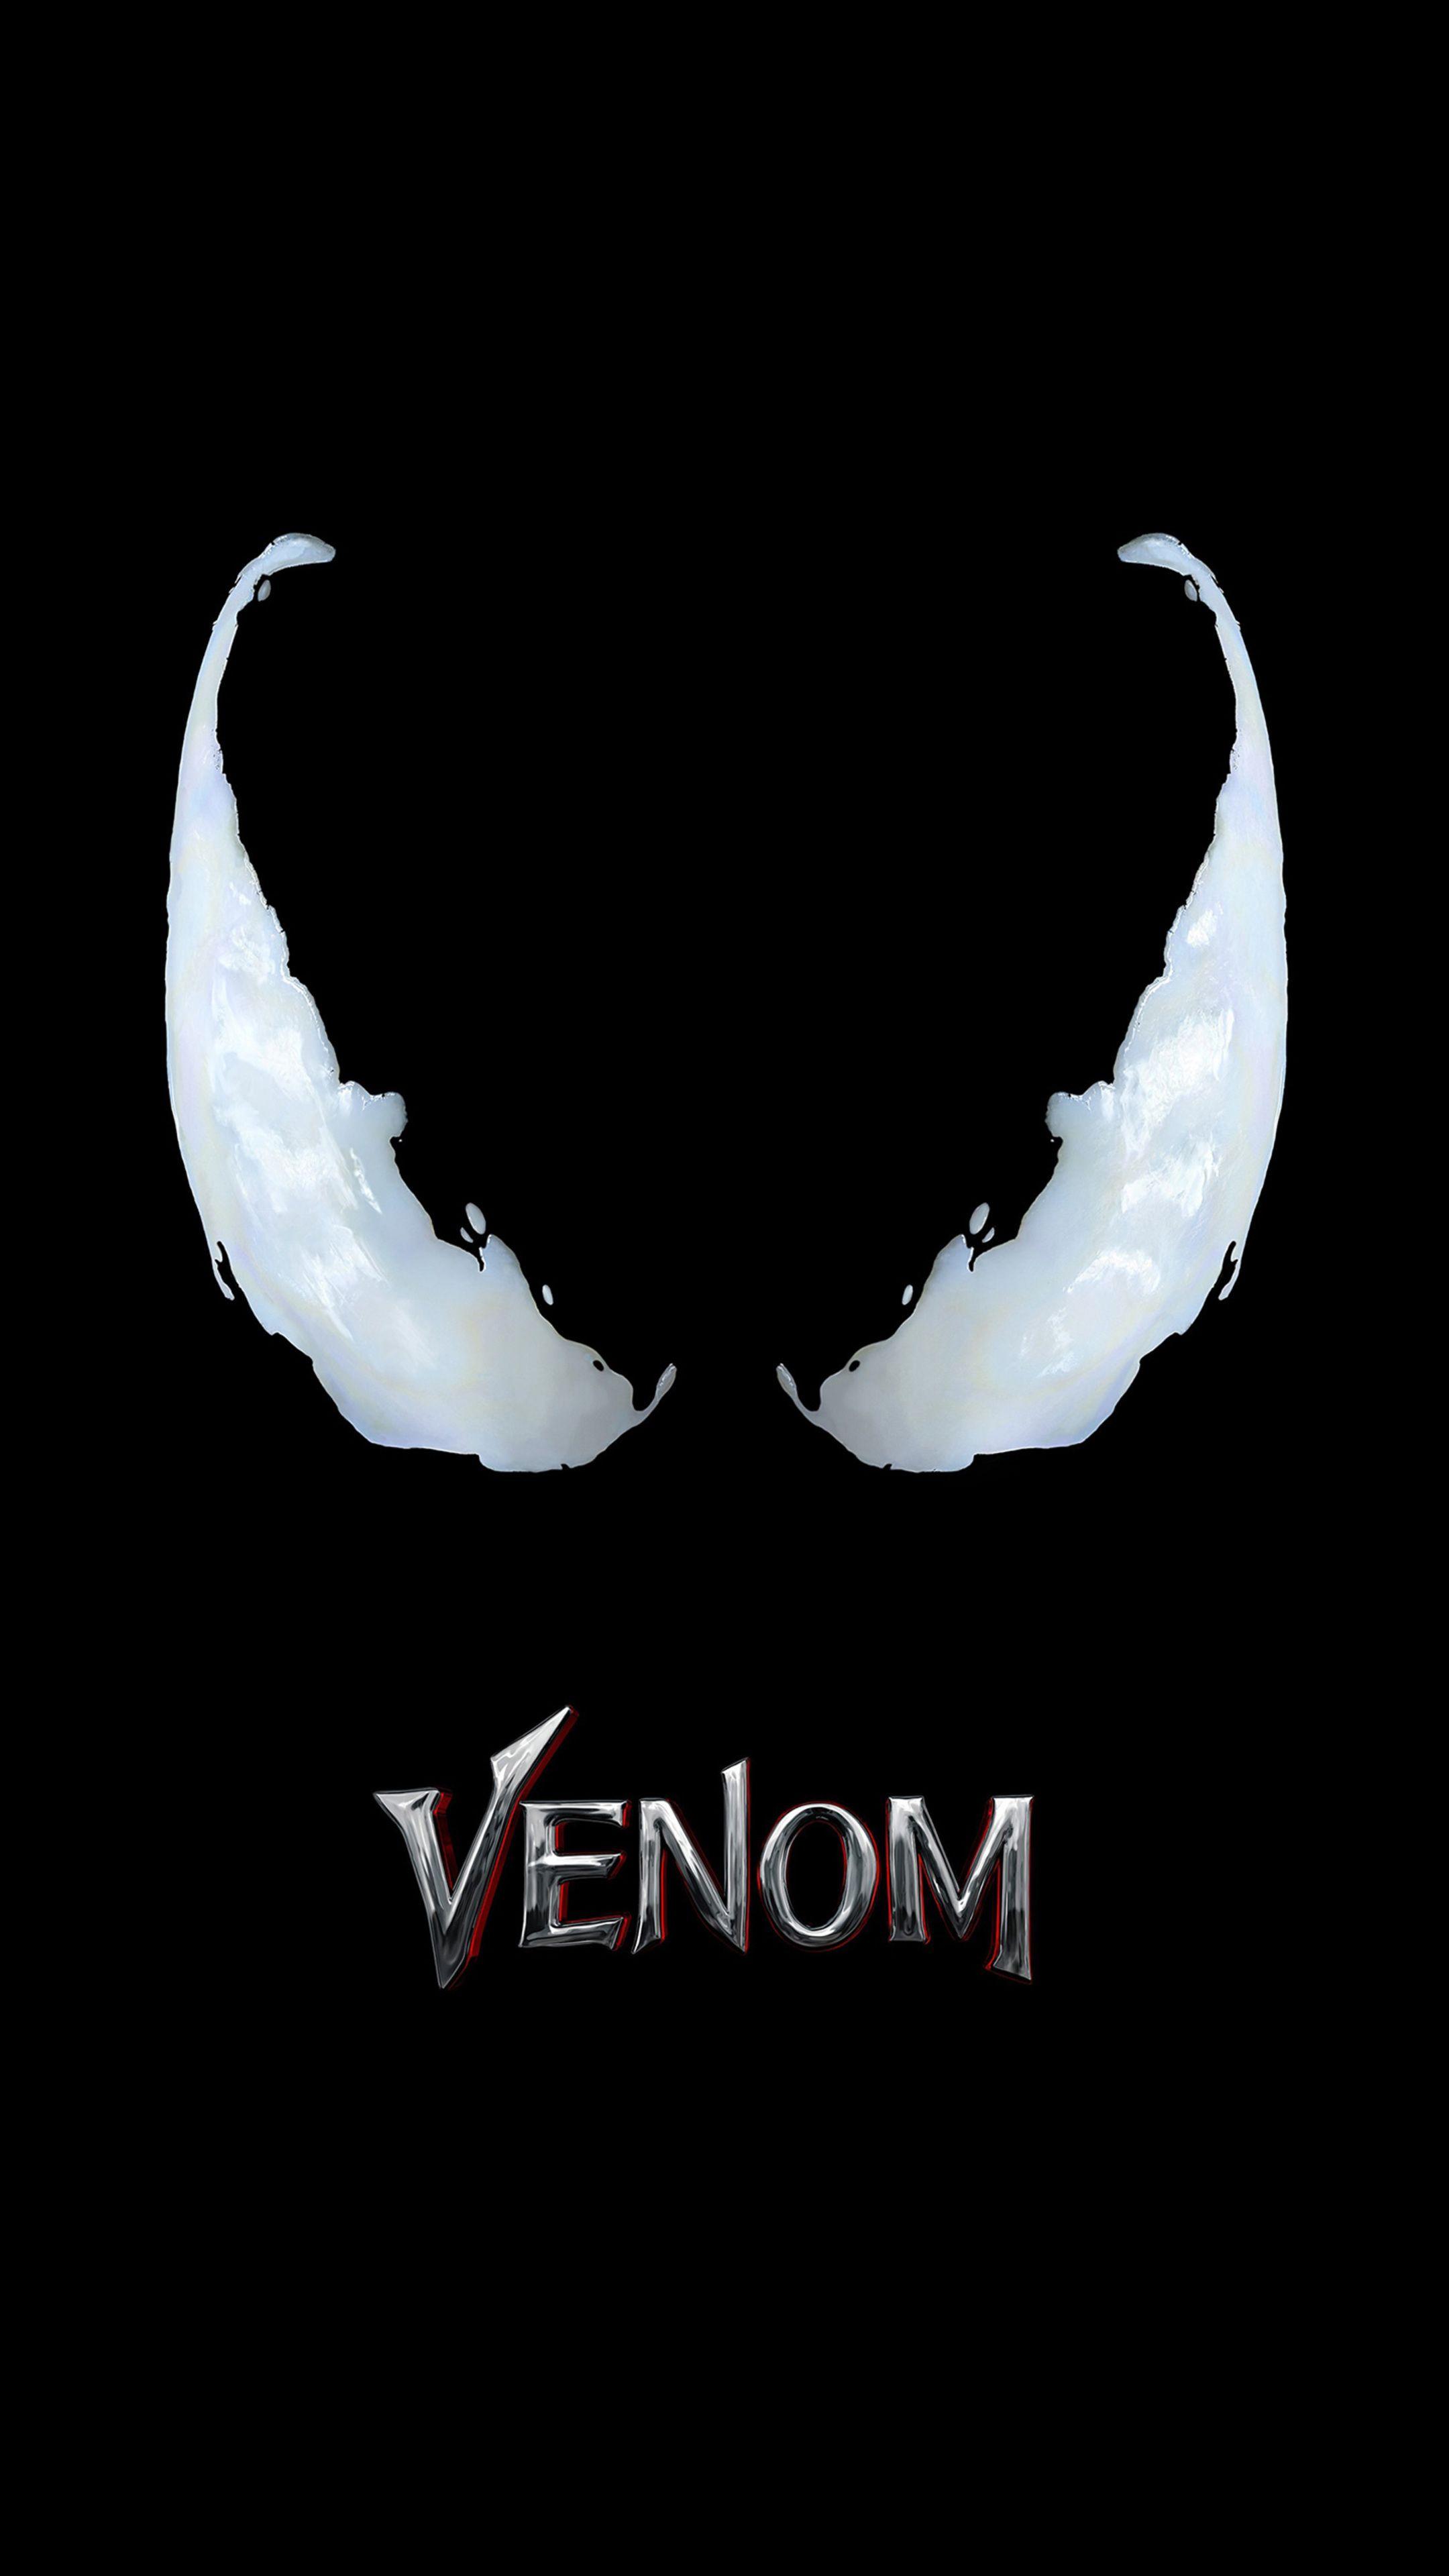 Xz Logo - Venom Movie Logo 4k Sony Xperia X, XZ, Z5 Premium HD 4k